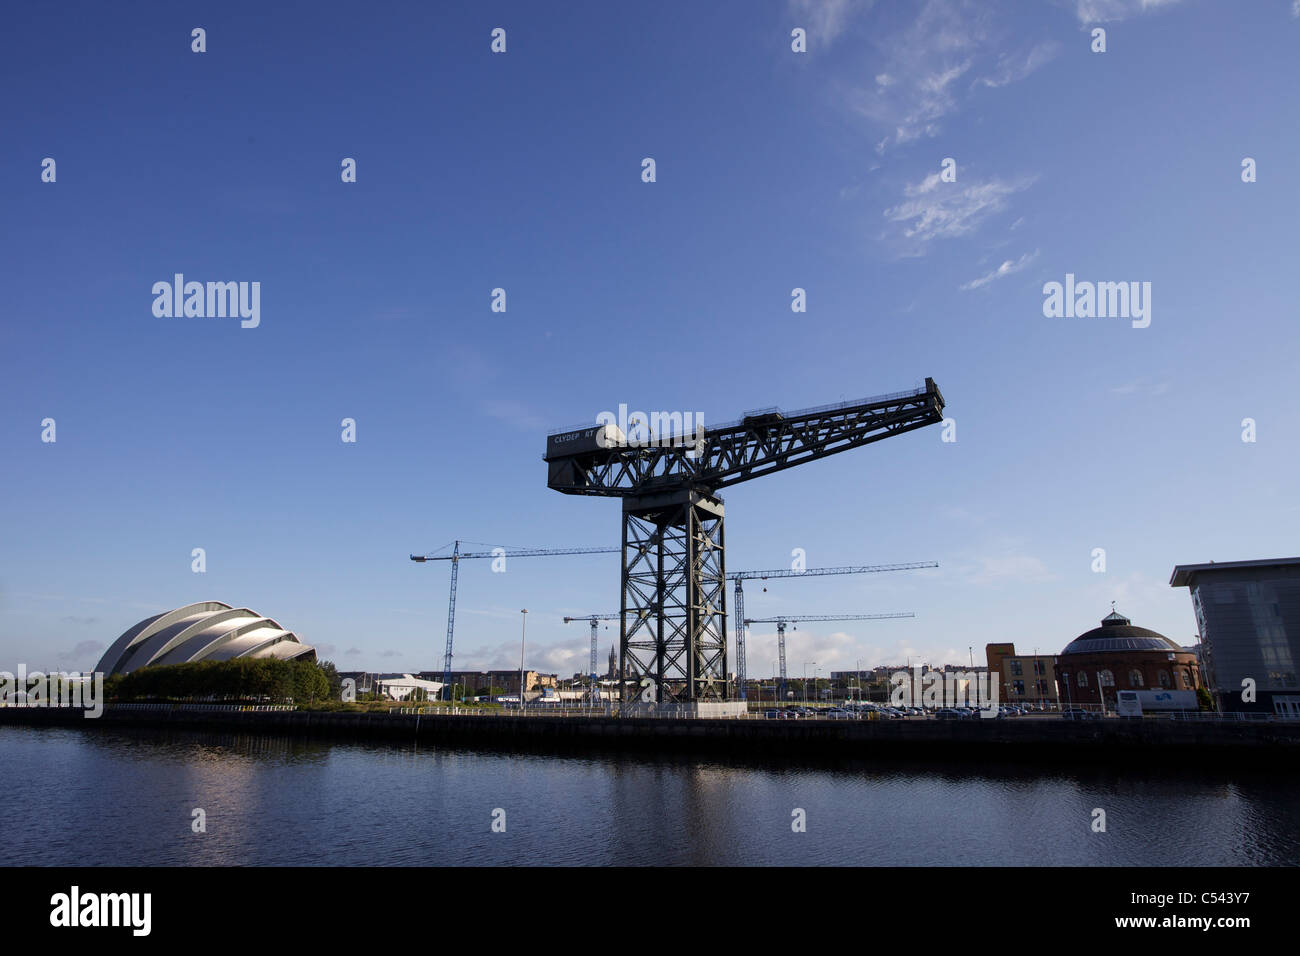 Grúas de construcción en Glasgow en el Scottish Hydro Arena sitio, Glasgow, Escocia, Reino Unido. Torre Universitaria en el horizonte. Foto de stock